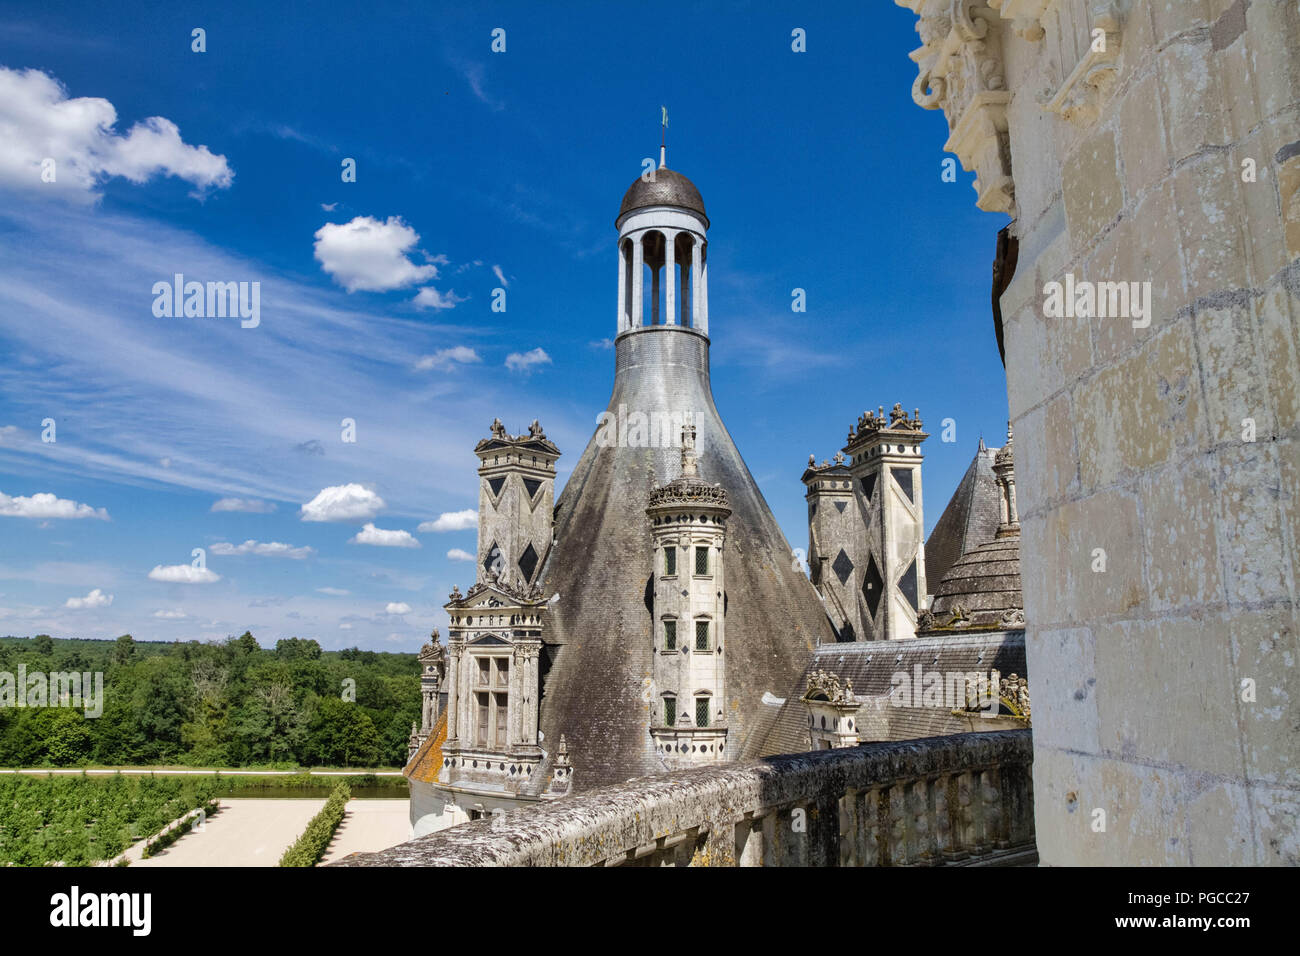 Le Château de Chambord est un Château français situé dans la Commune de Chambord. Architektur extraordinaire imaginée pour la Gloire de François I Stockfoto